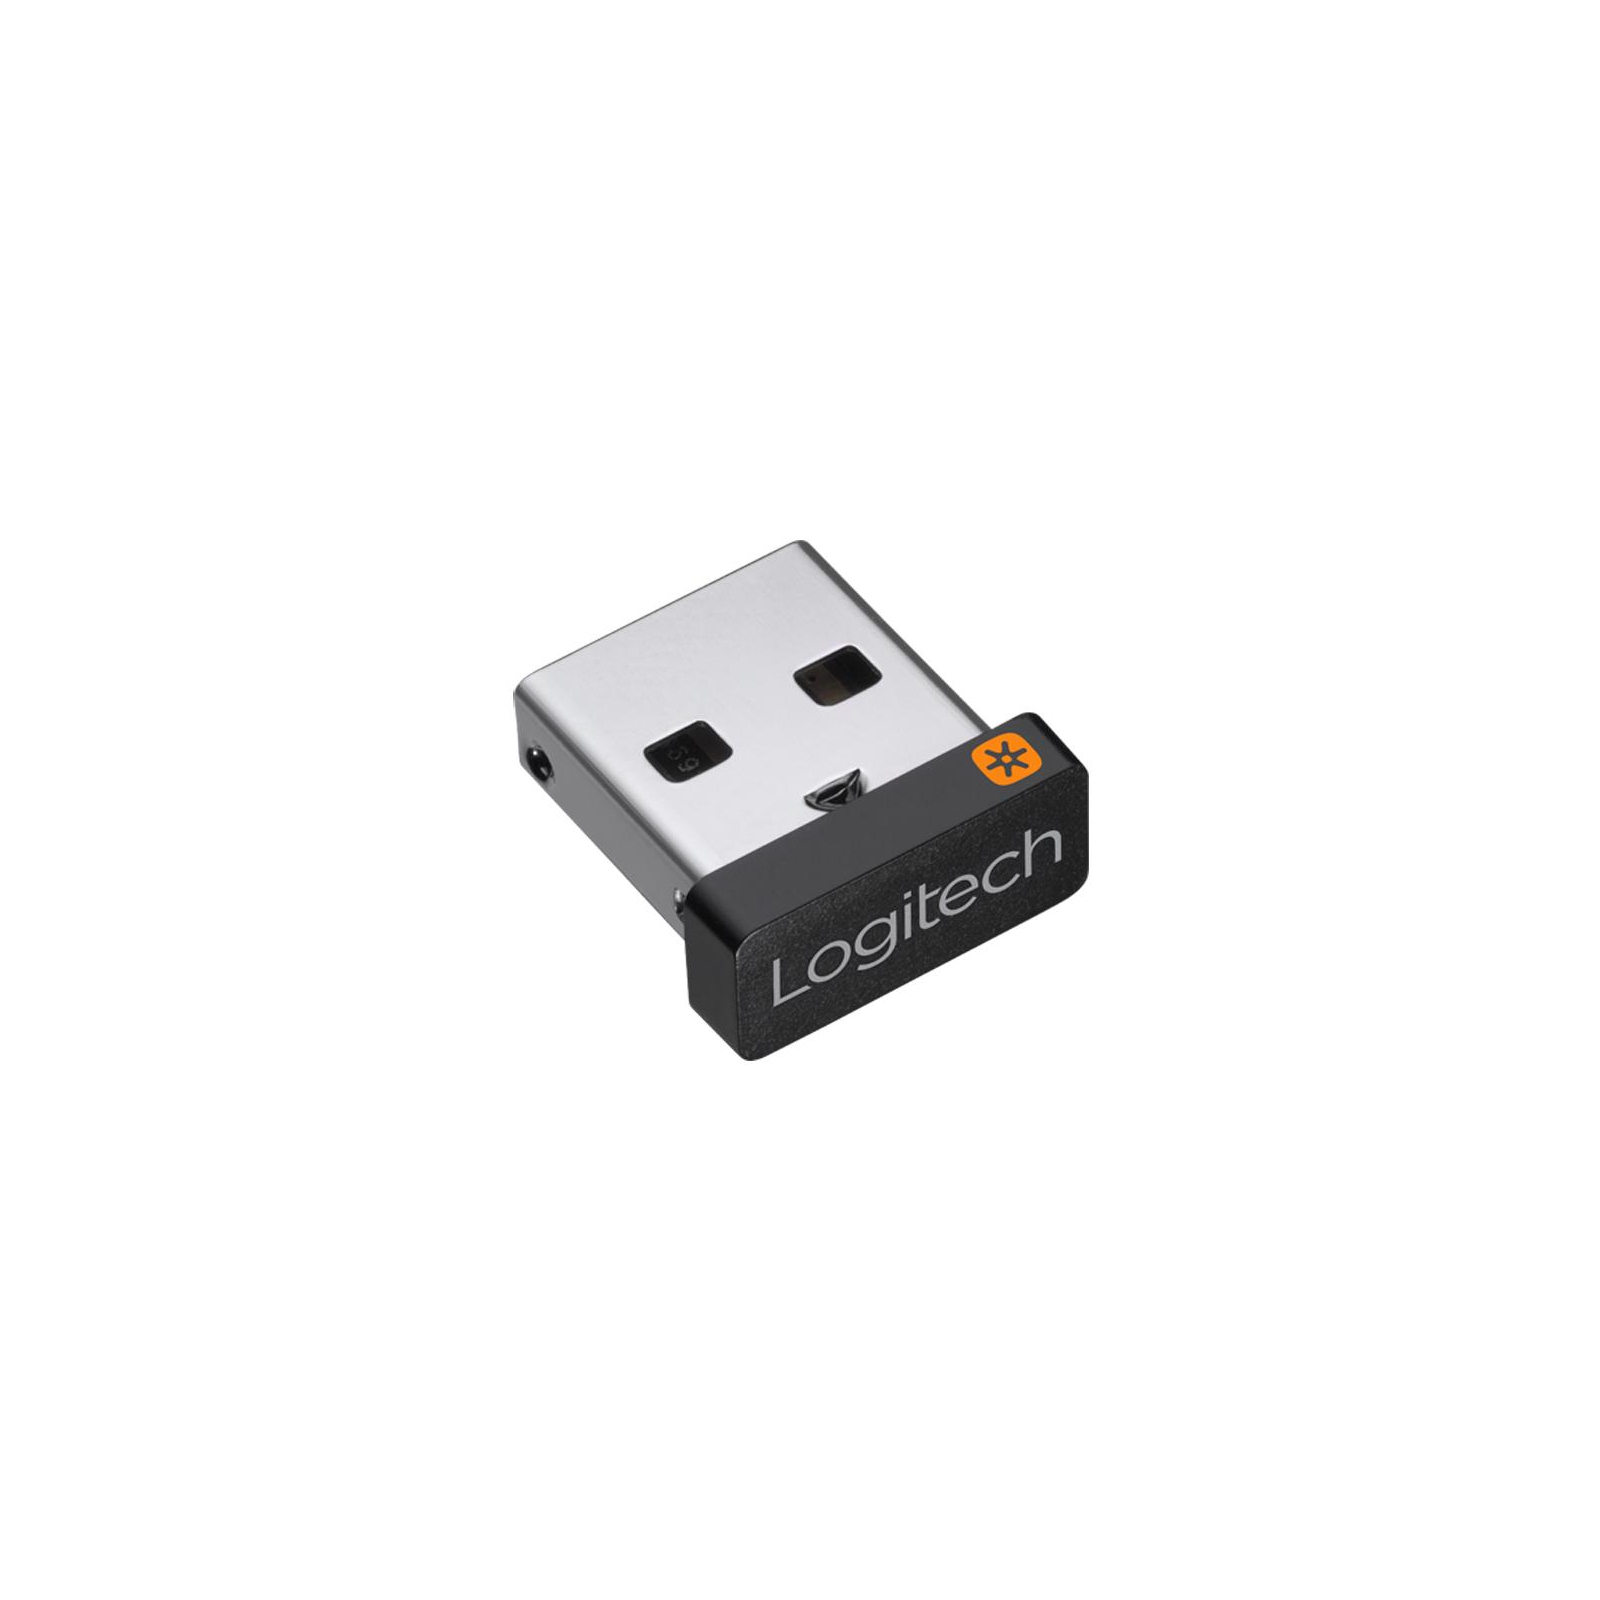 Адаптер Logitech USB Unifying Receiver - 2.4GHZ - EMEA - STANDALONE (L910-005931)